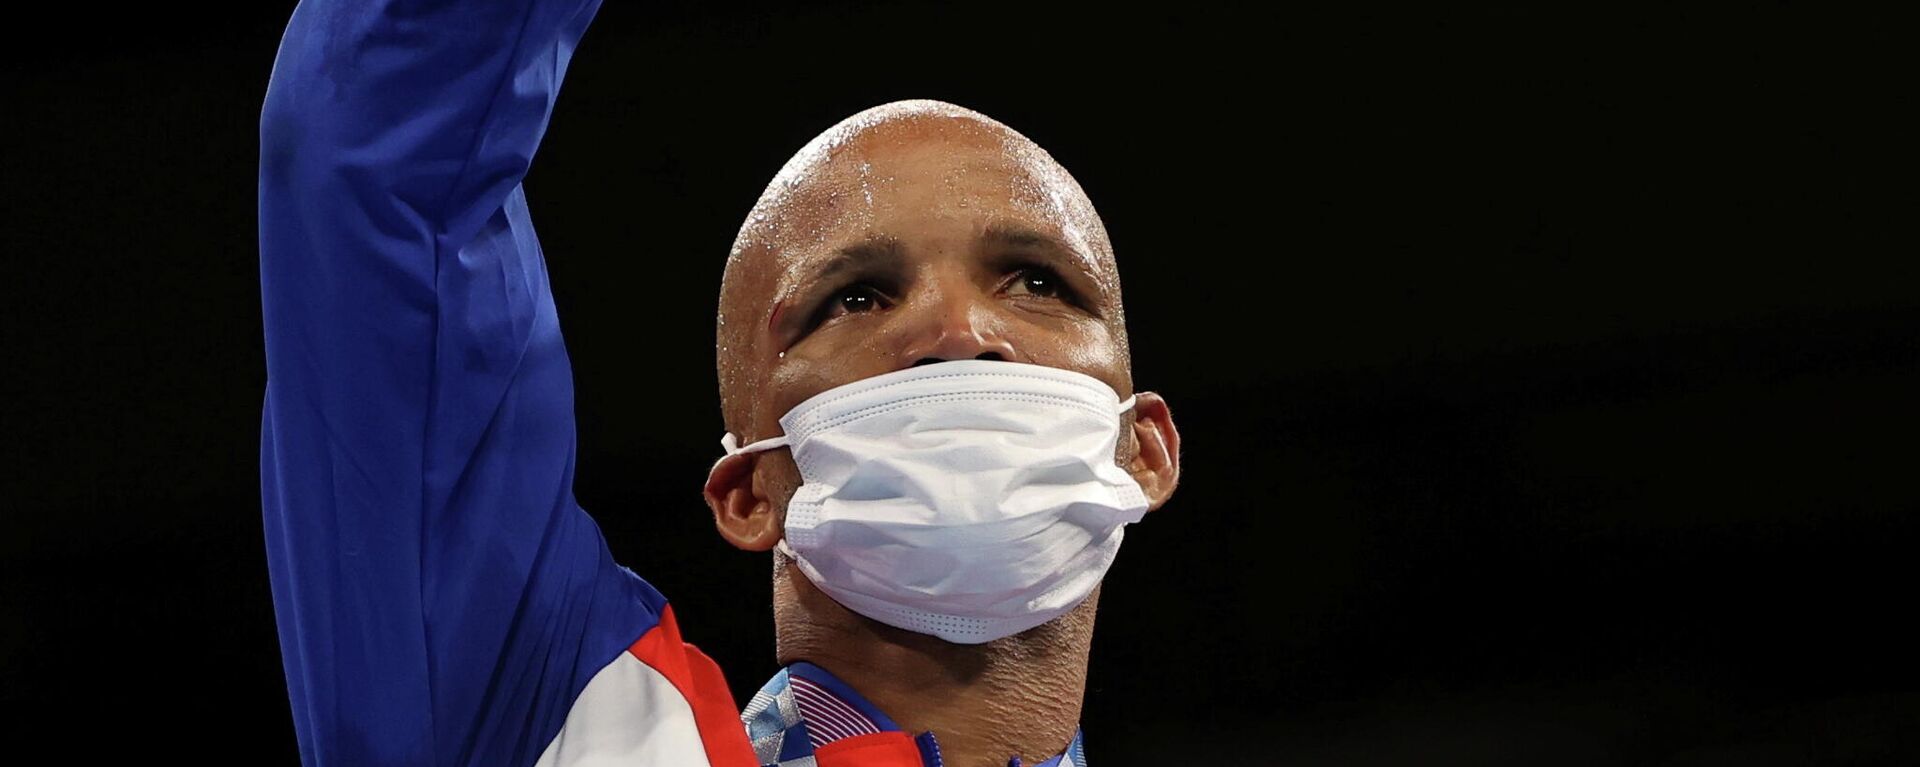 Roniel Iglesias, boxeador cubano, JJOO Tokio 2020 - Sputnik Mundo, 1920, 03.08.2021